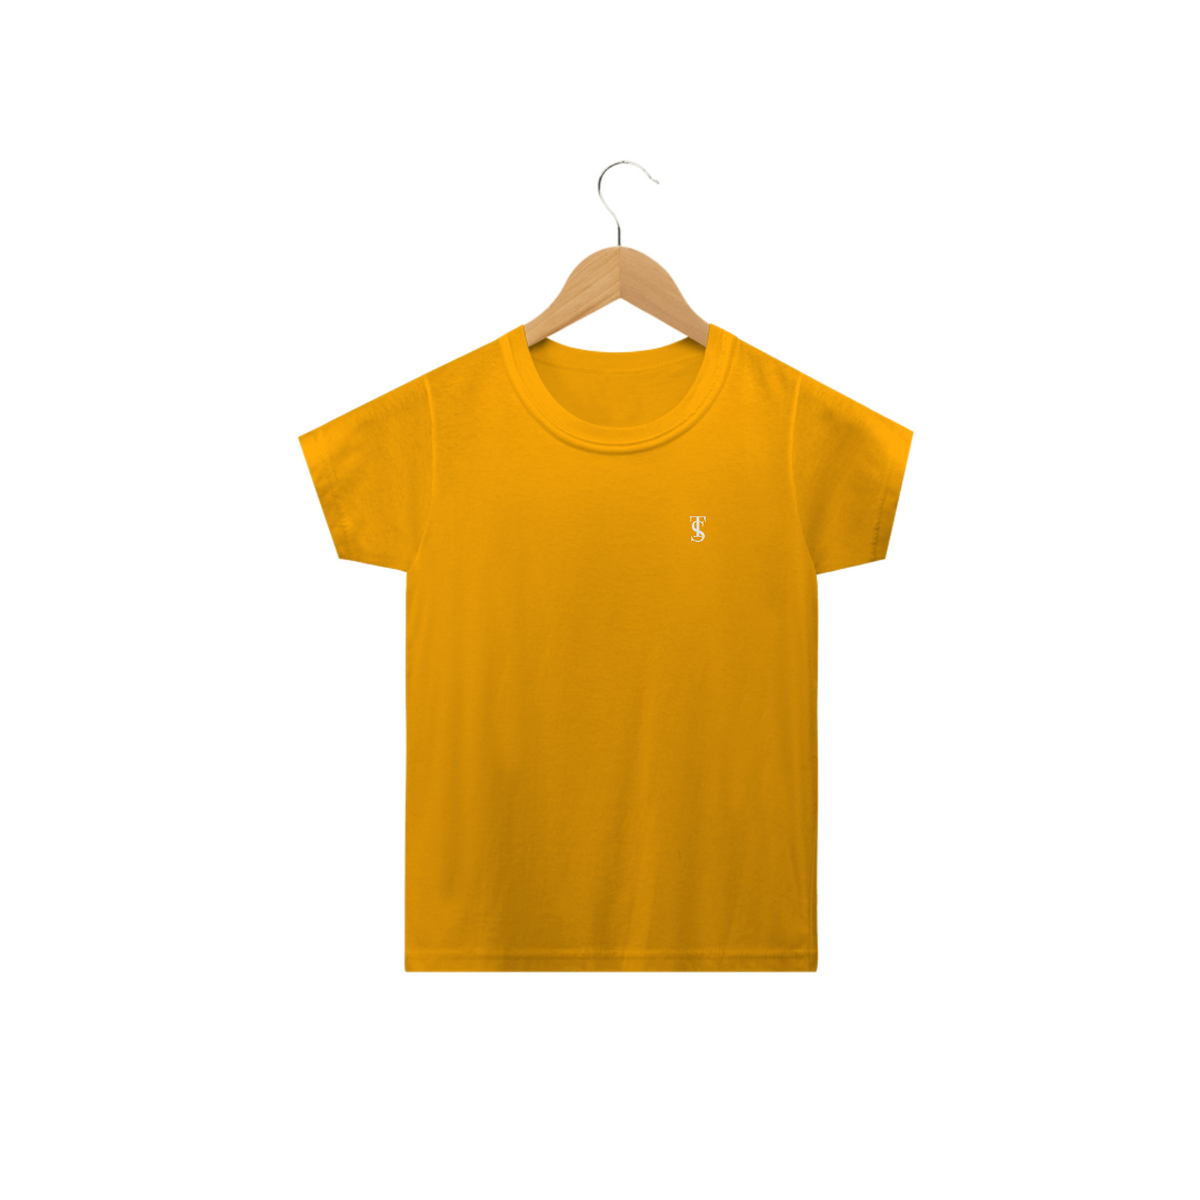 Nome do produto: Camiseta Básica Infantil Amarelo-Ouro